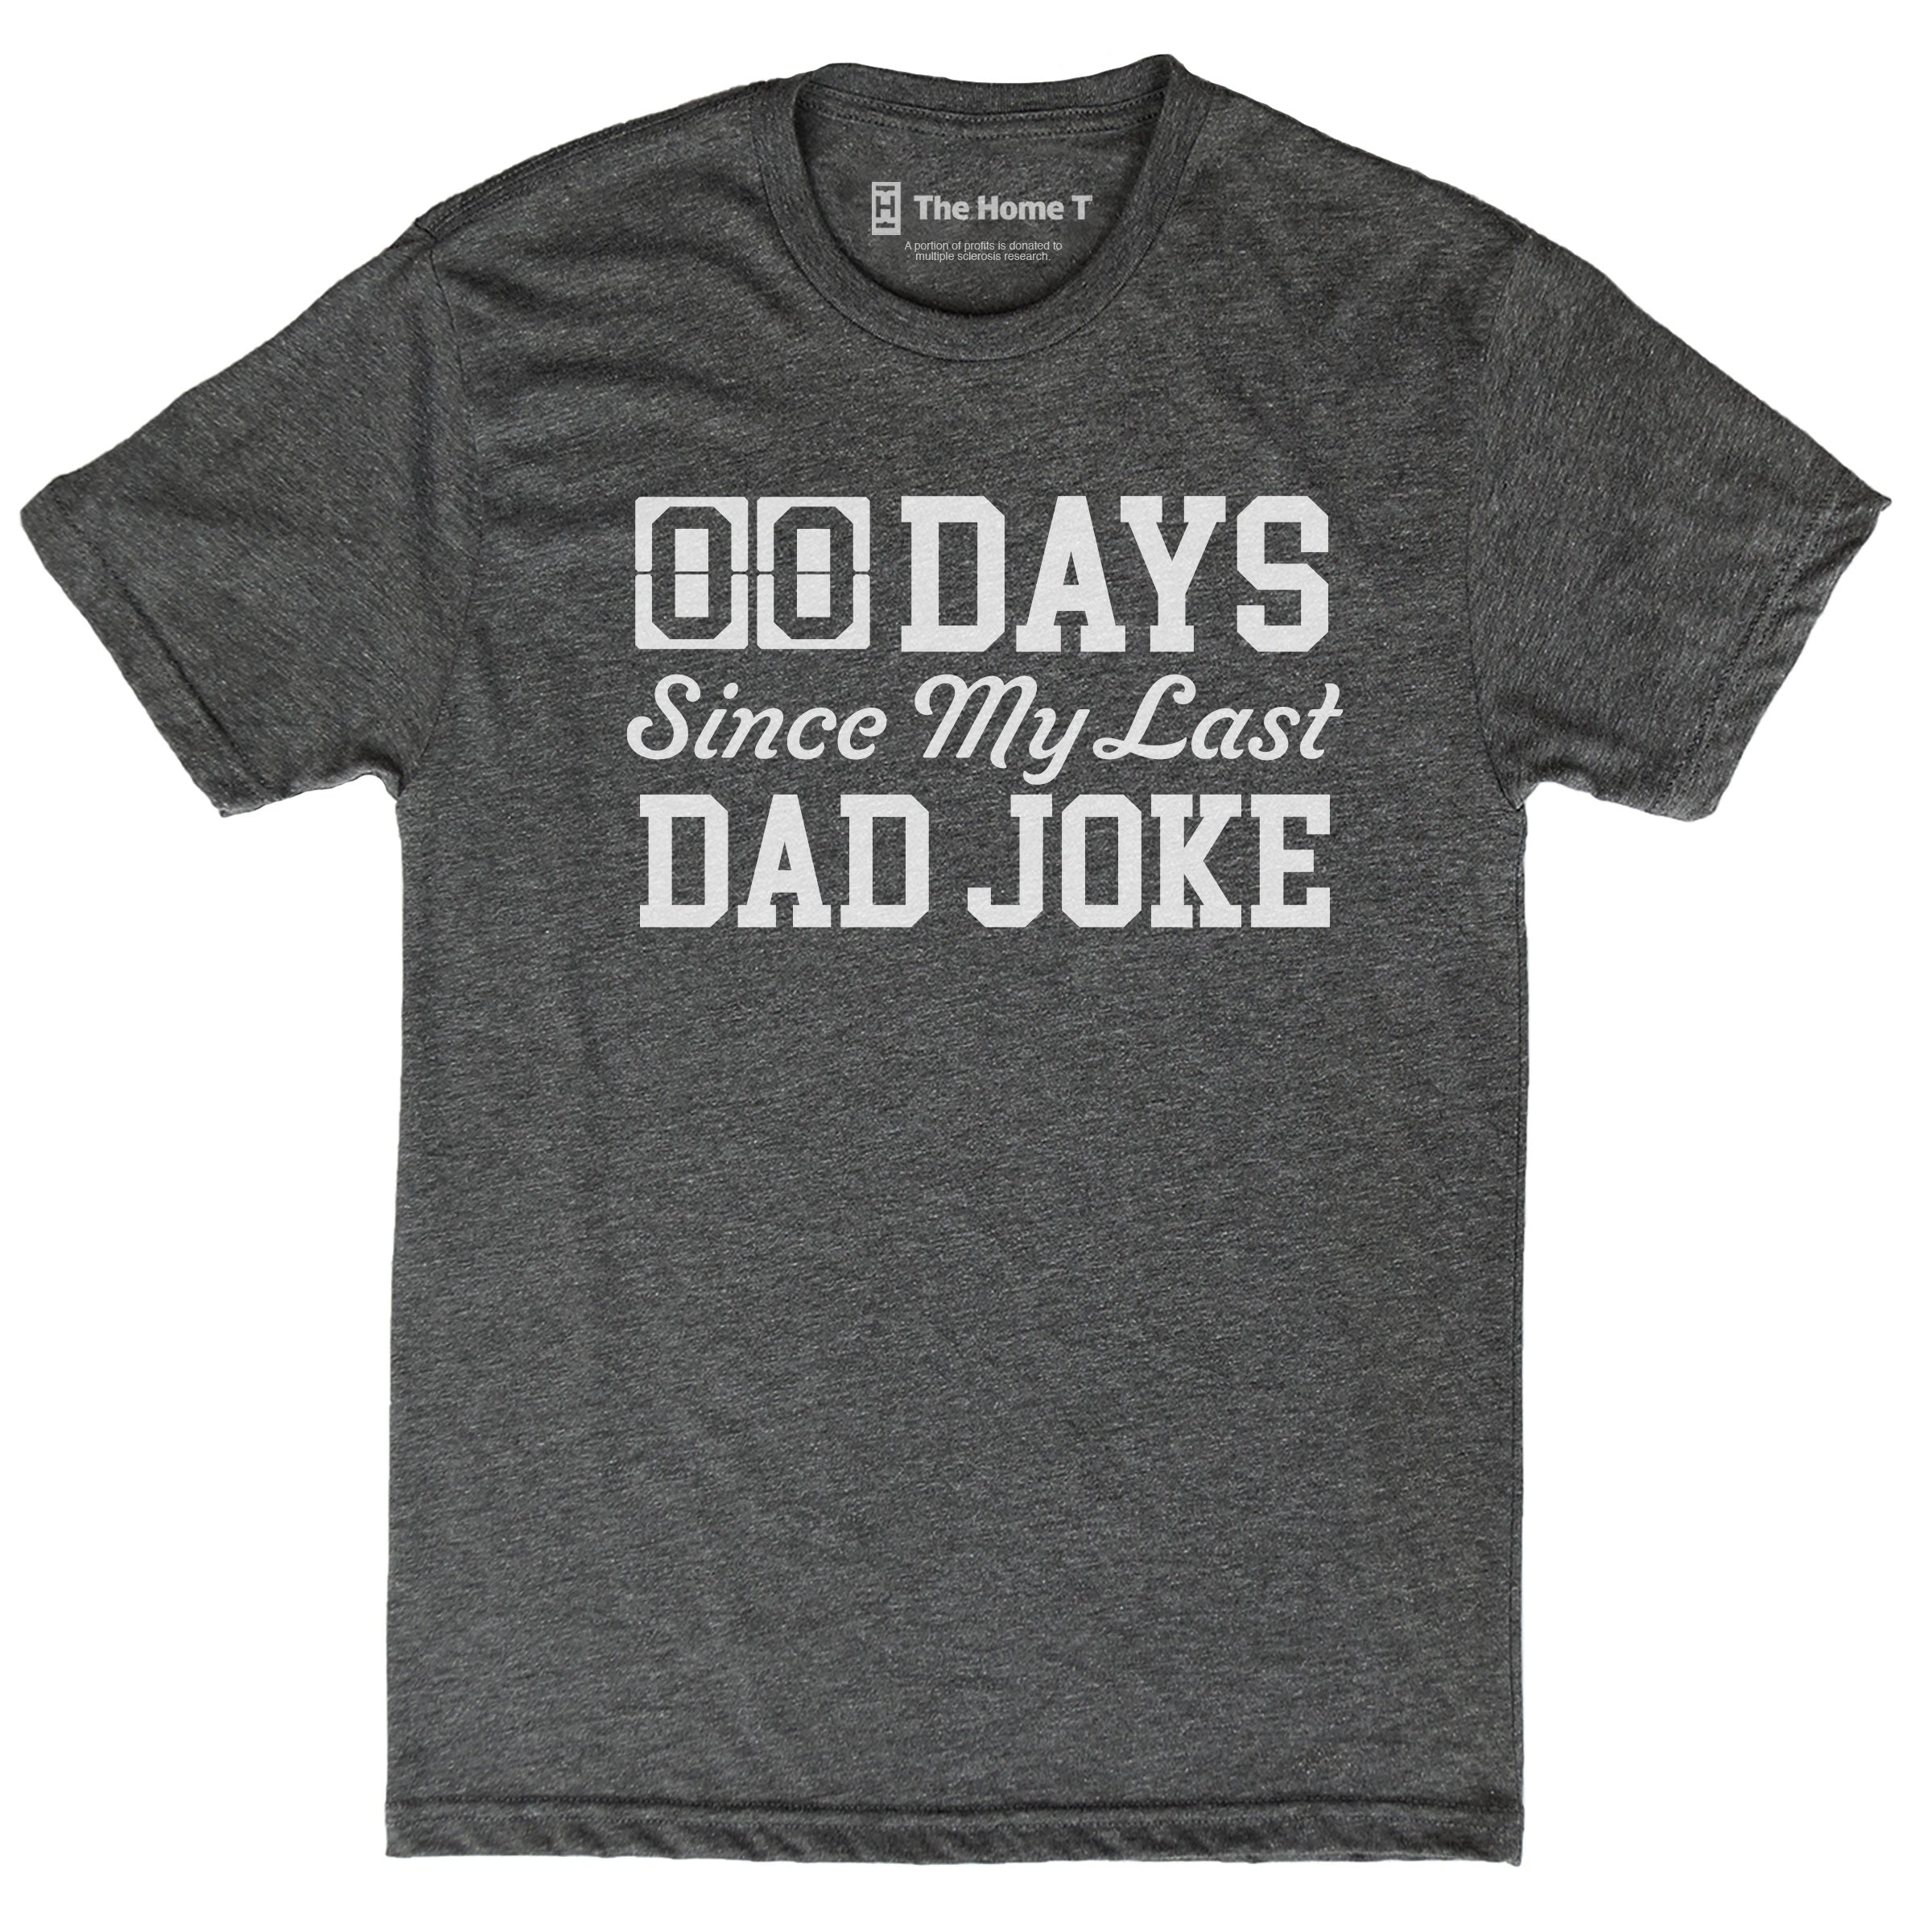 00 Days Since Last Dad Joke